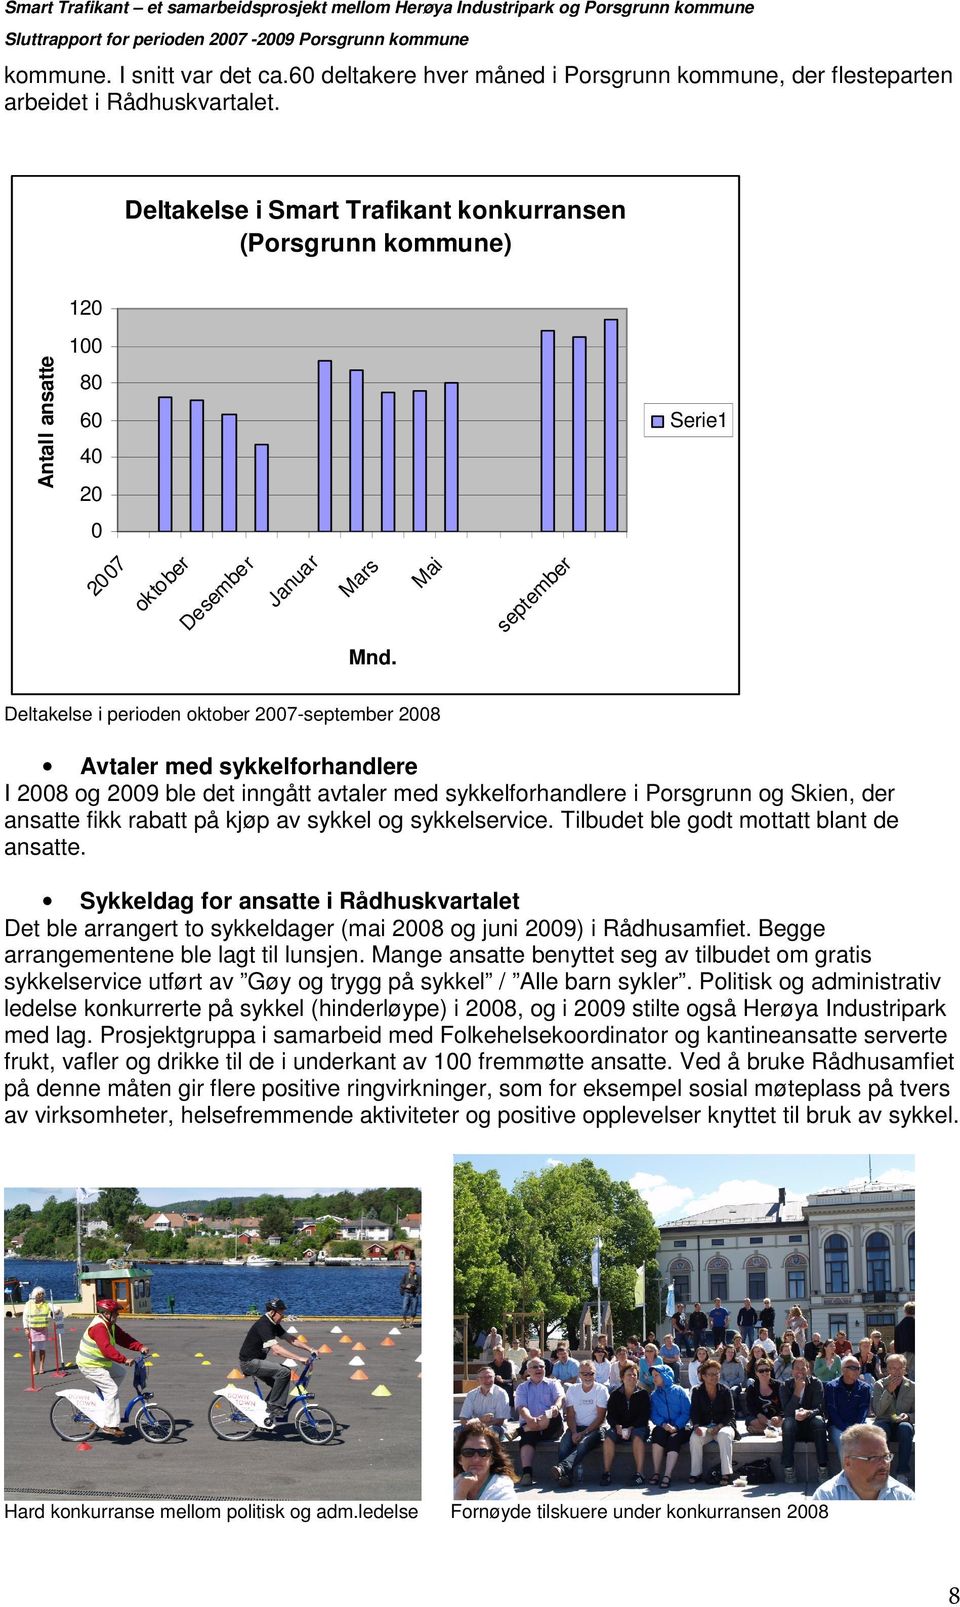 Deltakelse i Smart Trafikant konkurransen (Porsgrunn kommune) Antall ansatte 120 100 80 60 Serie1 40 20 be r se pt em ai M ar s M r Ja nu a 20 07 ok to be r De se m be r 0 Mnd.